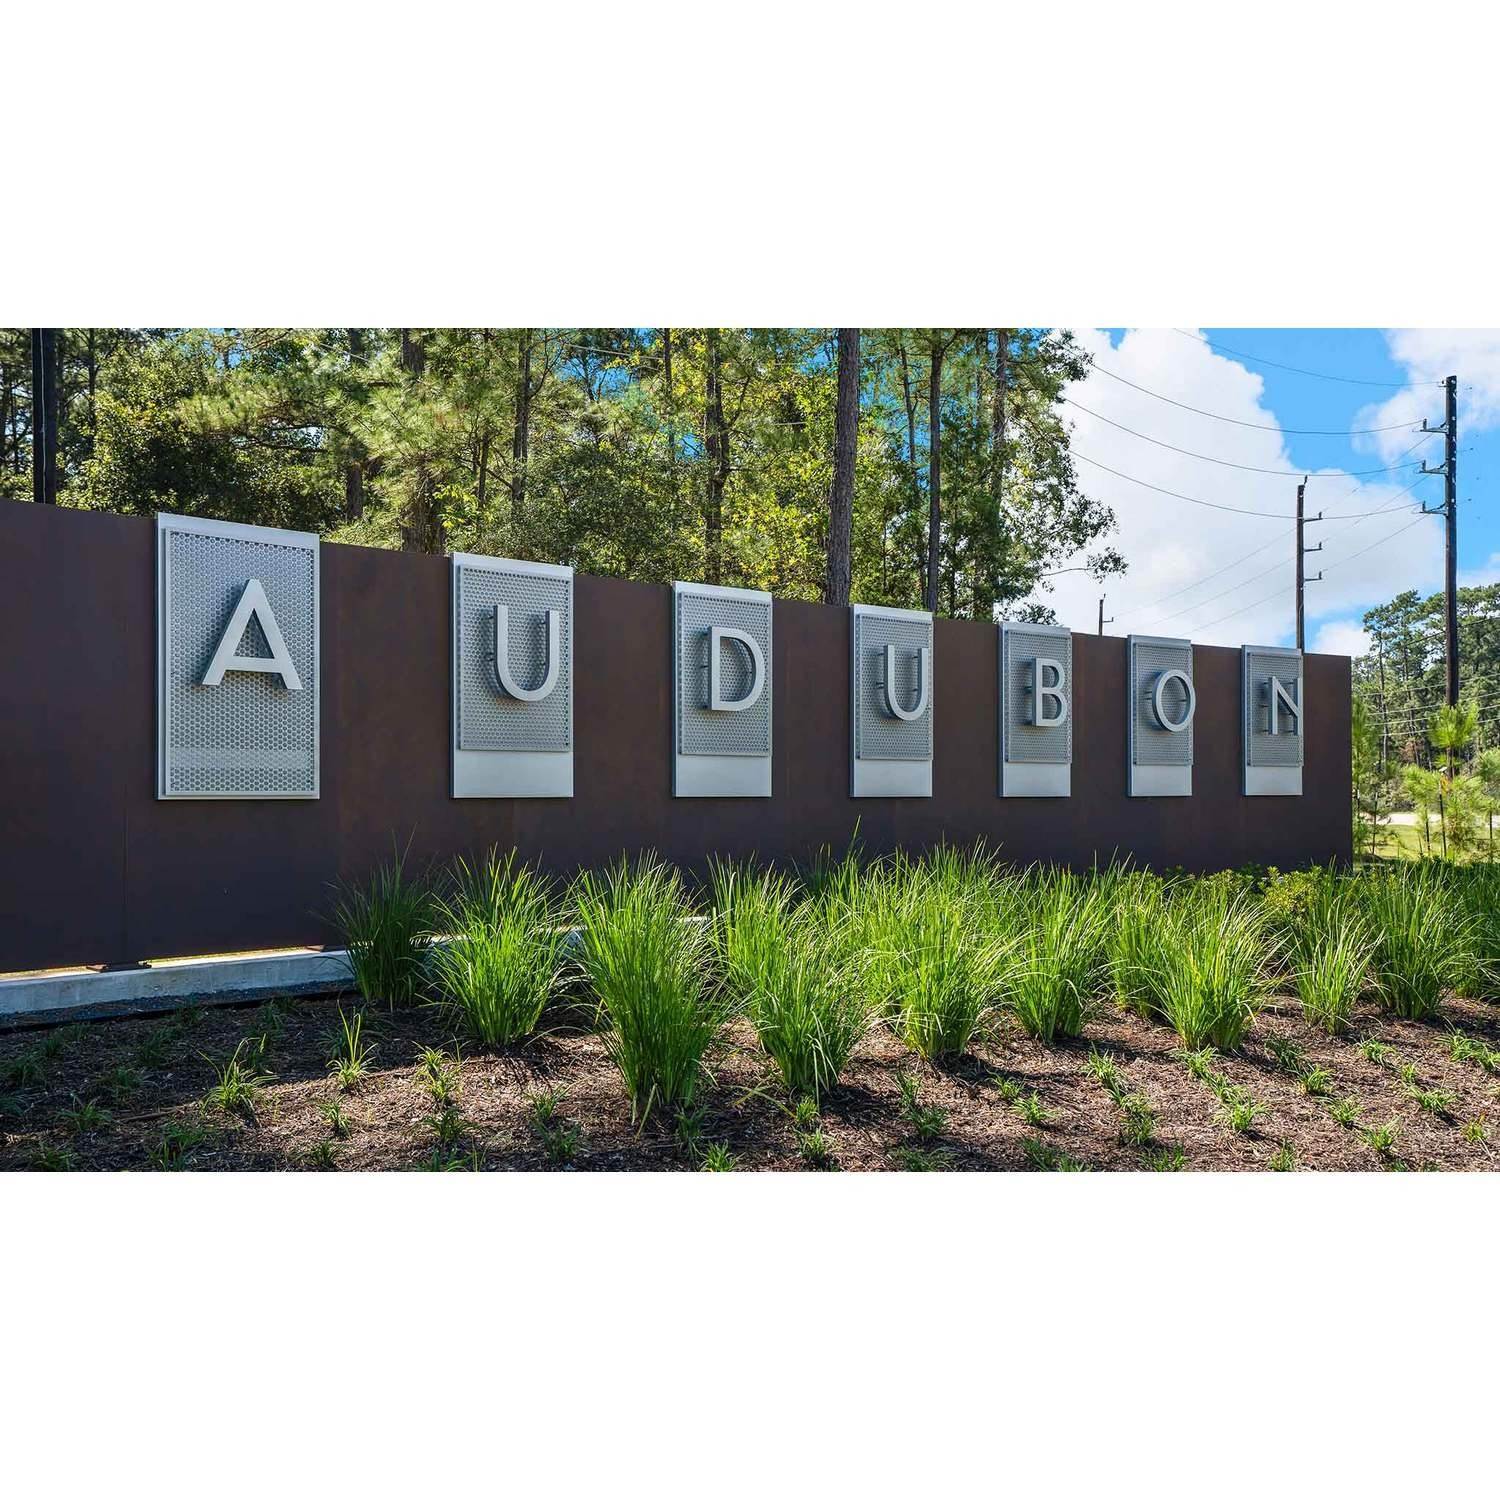 Audubon 60' building at 15670 Audubon Park Drive, Magnolia, TX 77354